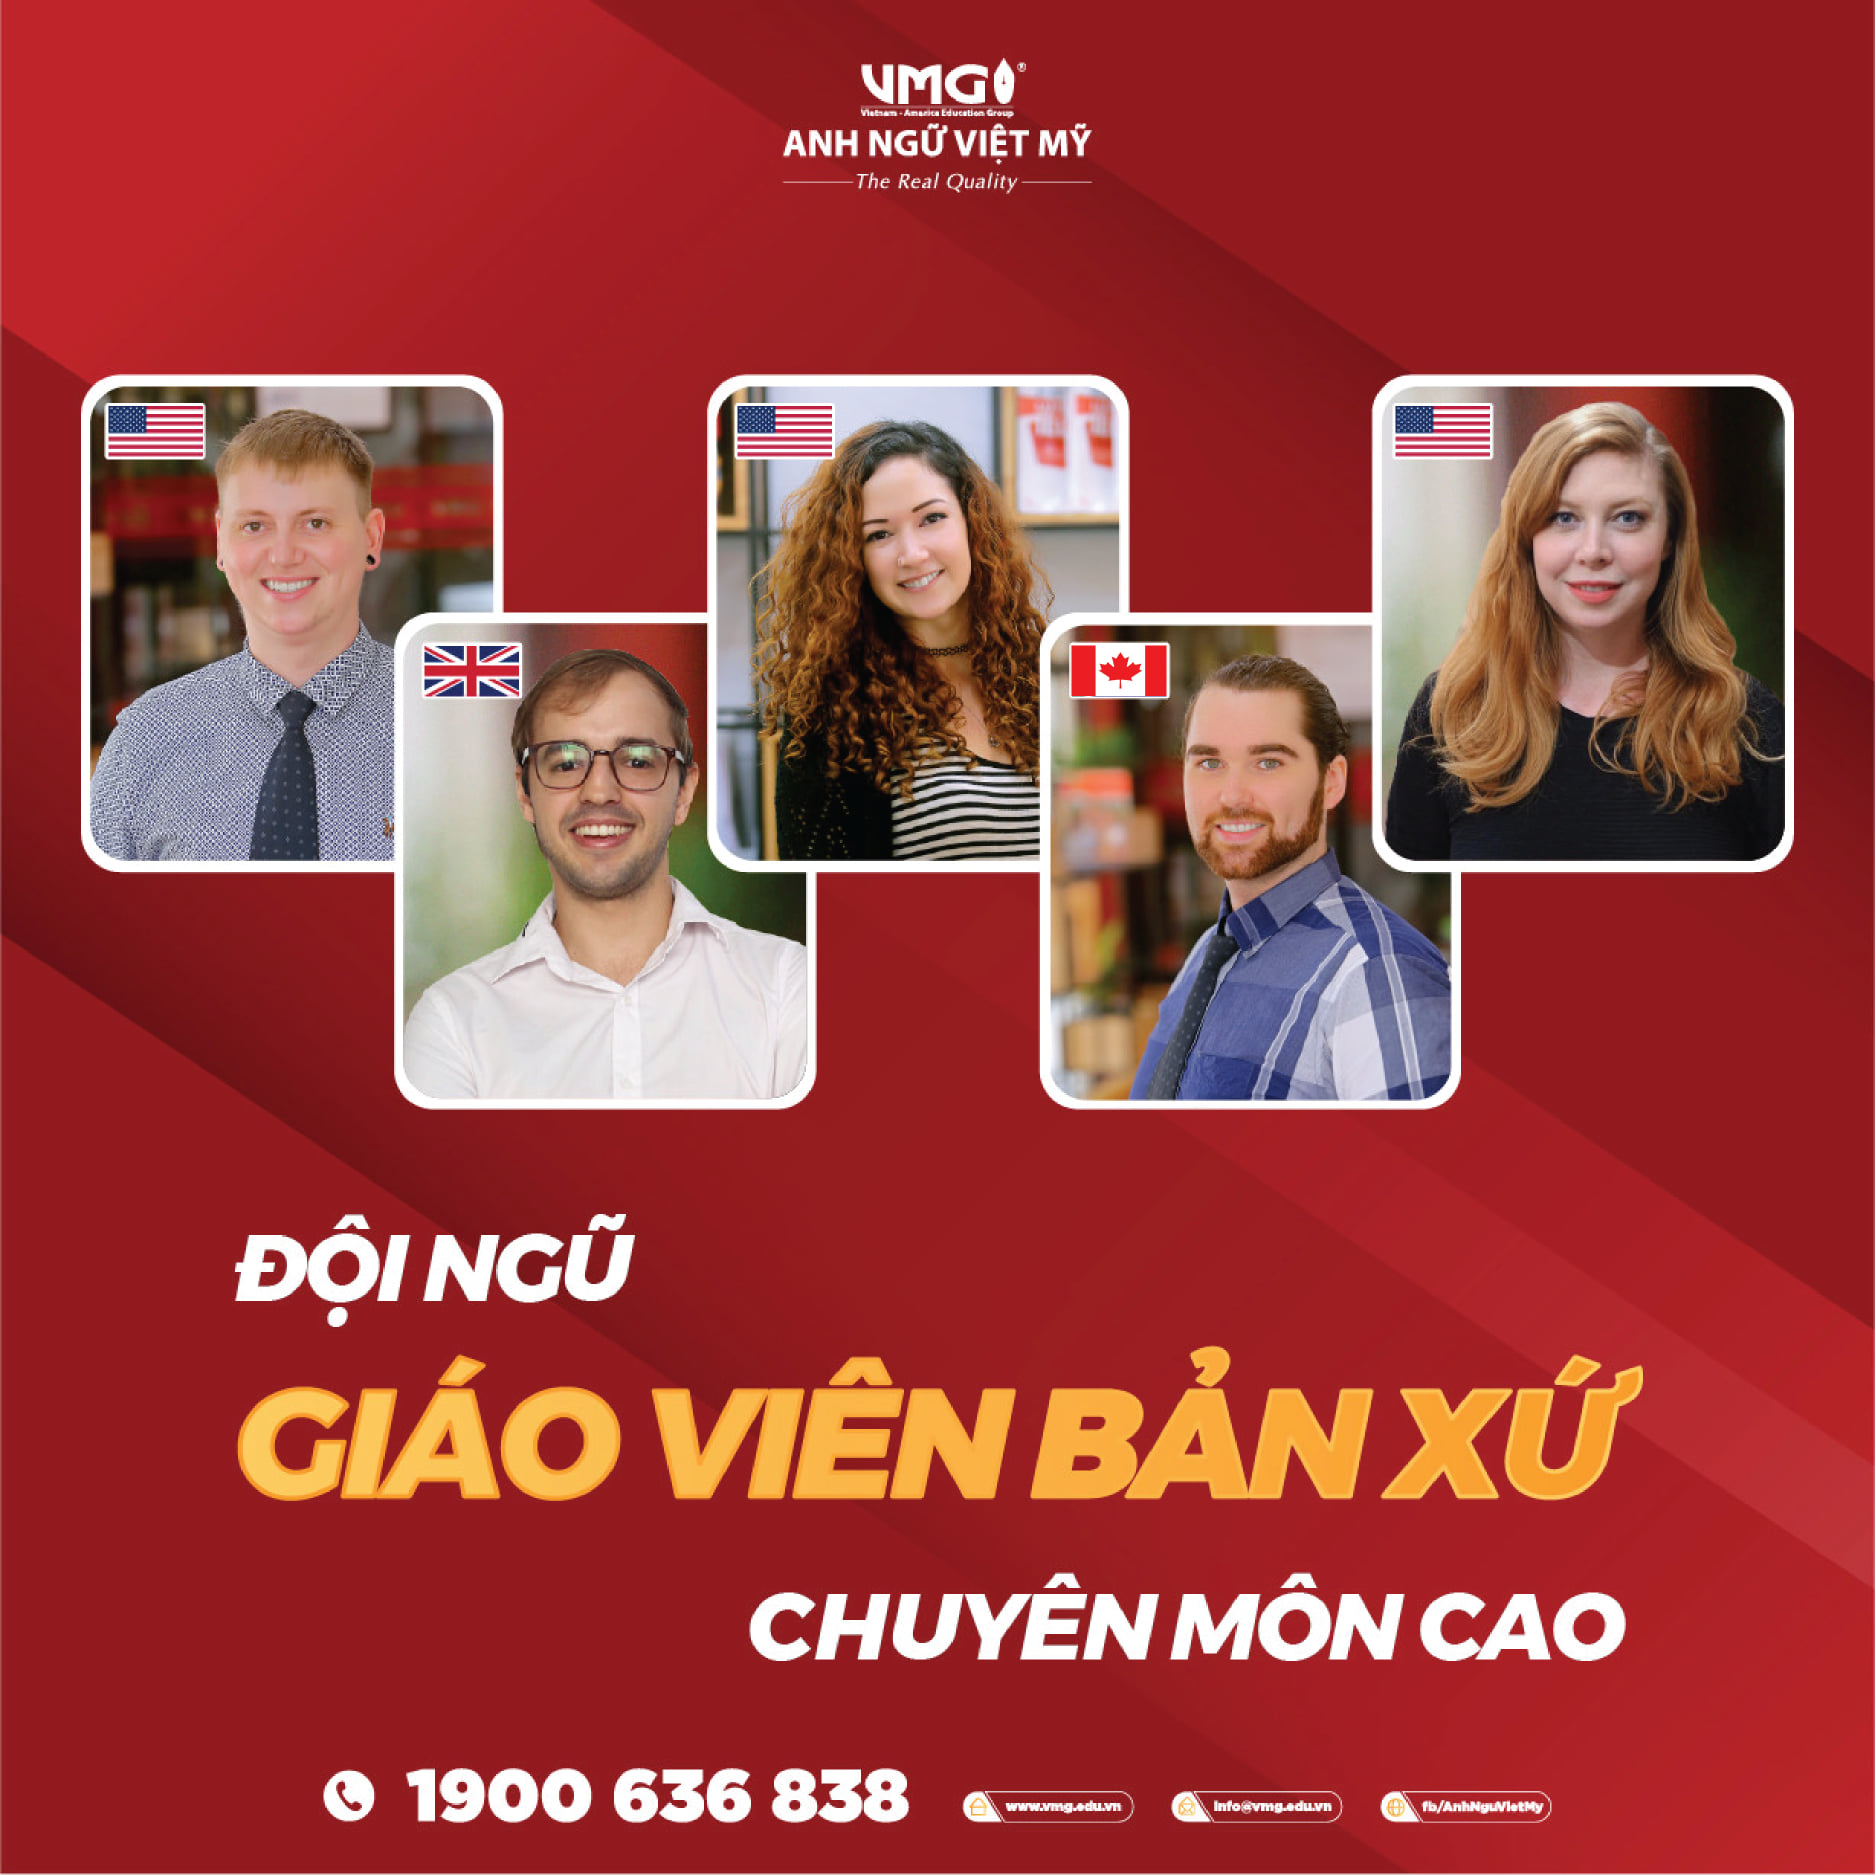 Top 8 trung tâm Anh ngữ tốt nhất tại Đồng Nai -  Trung tâm tiếng Anh Việt Mỹ - VMG